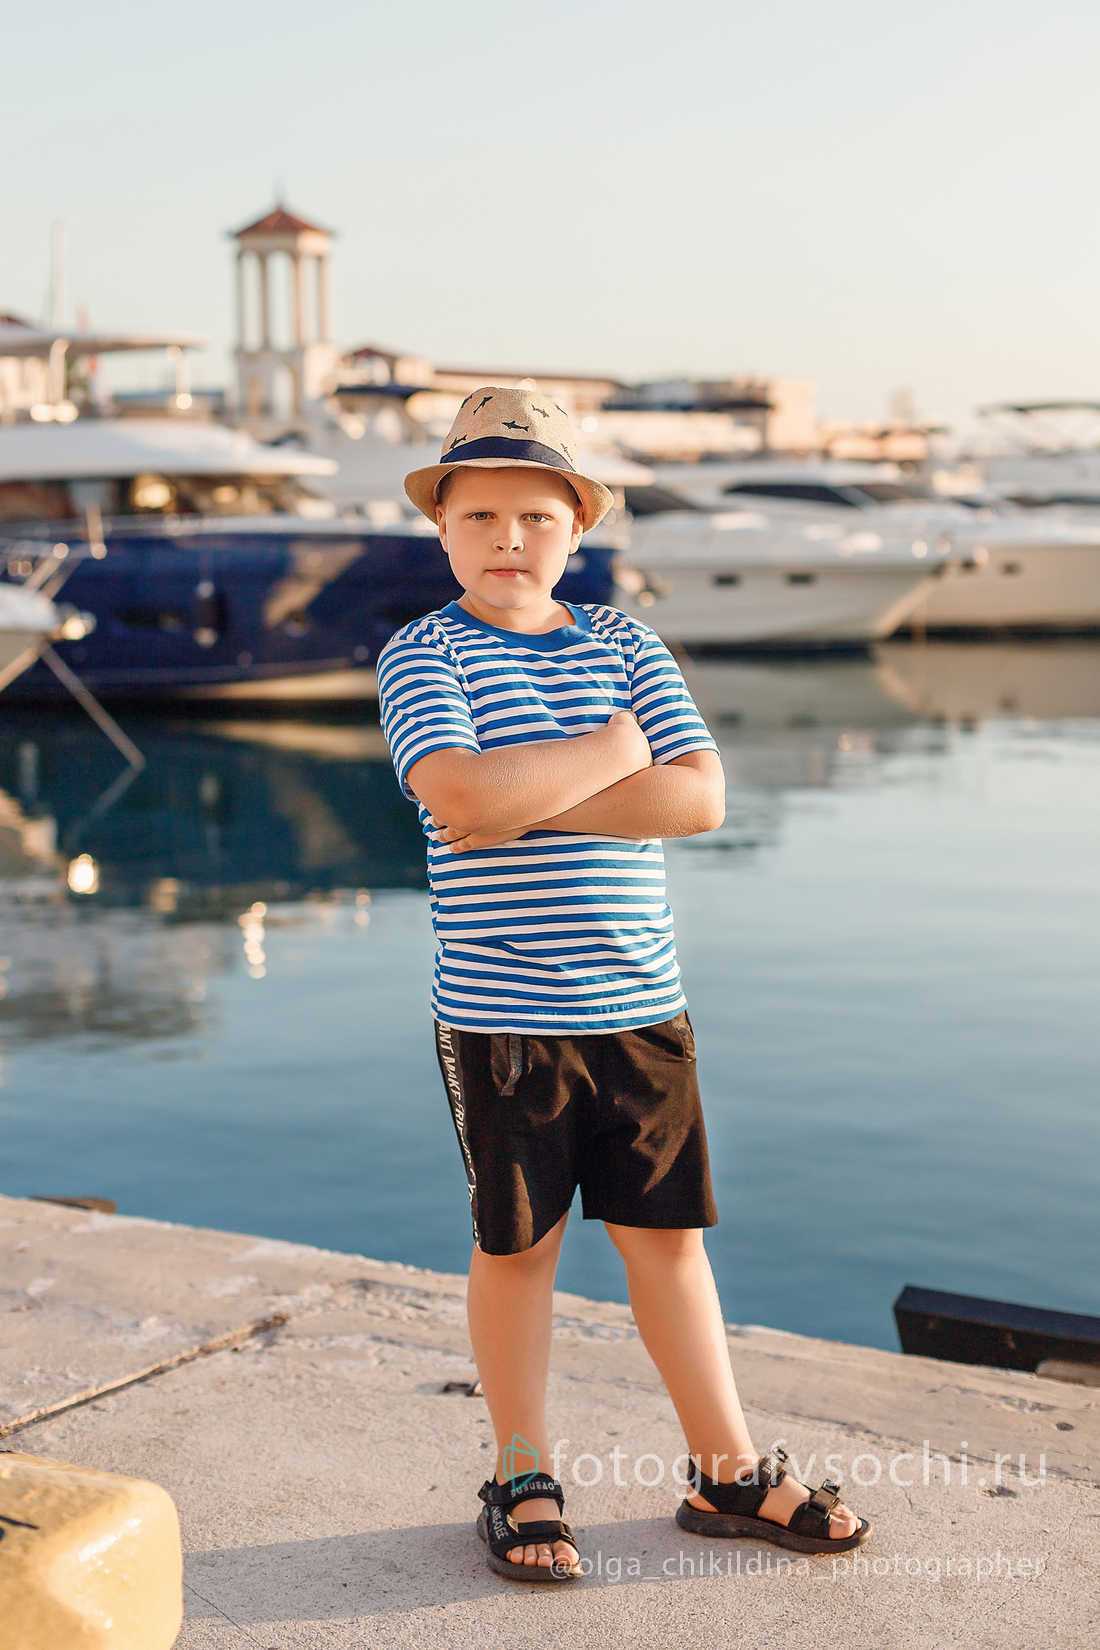 Мальчик в шляпе и полосатой футболке у моря на фоне яхт